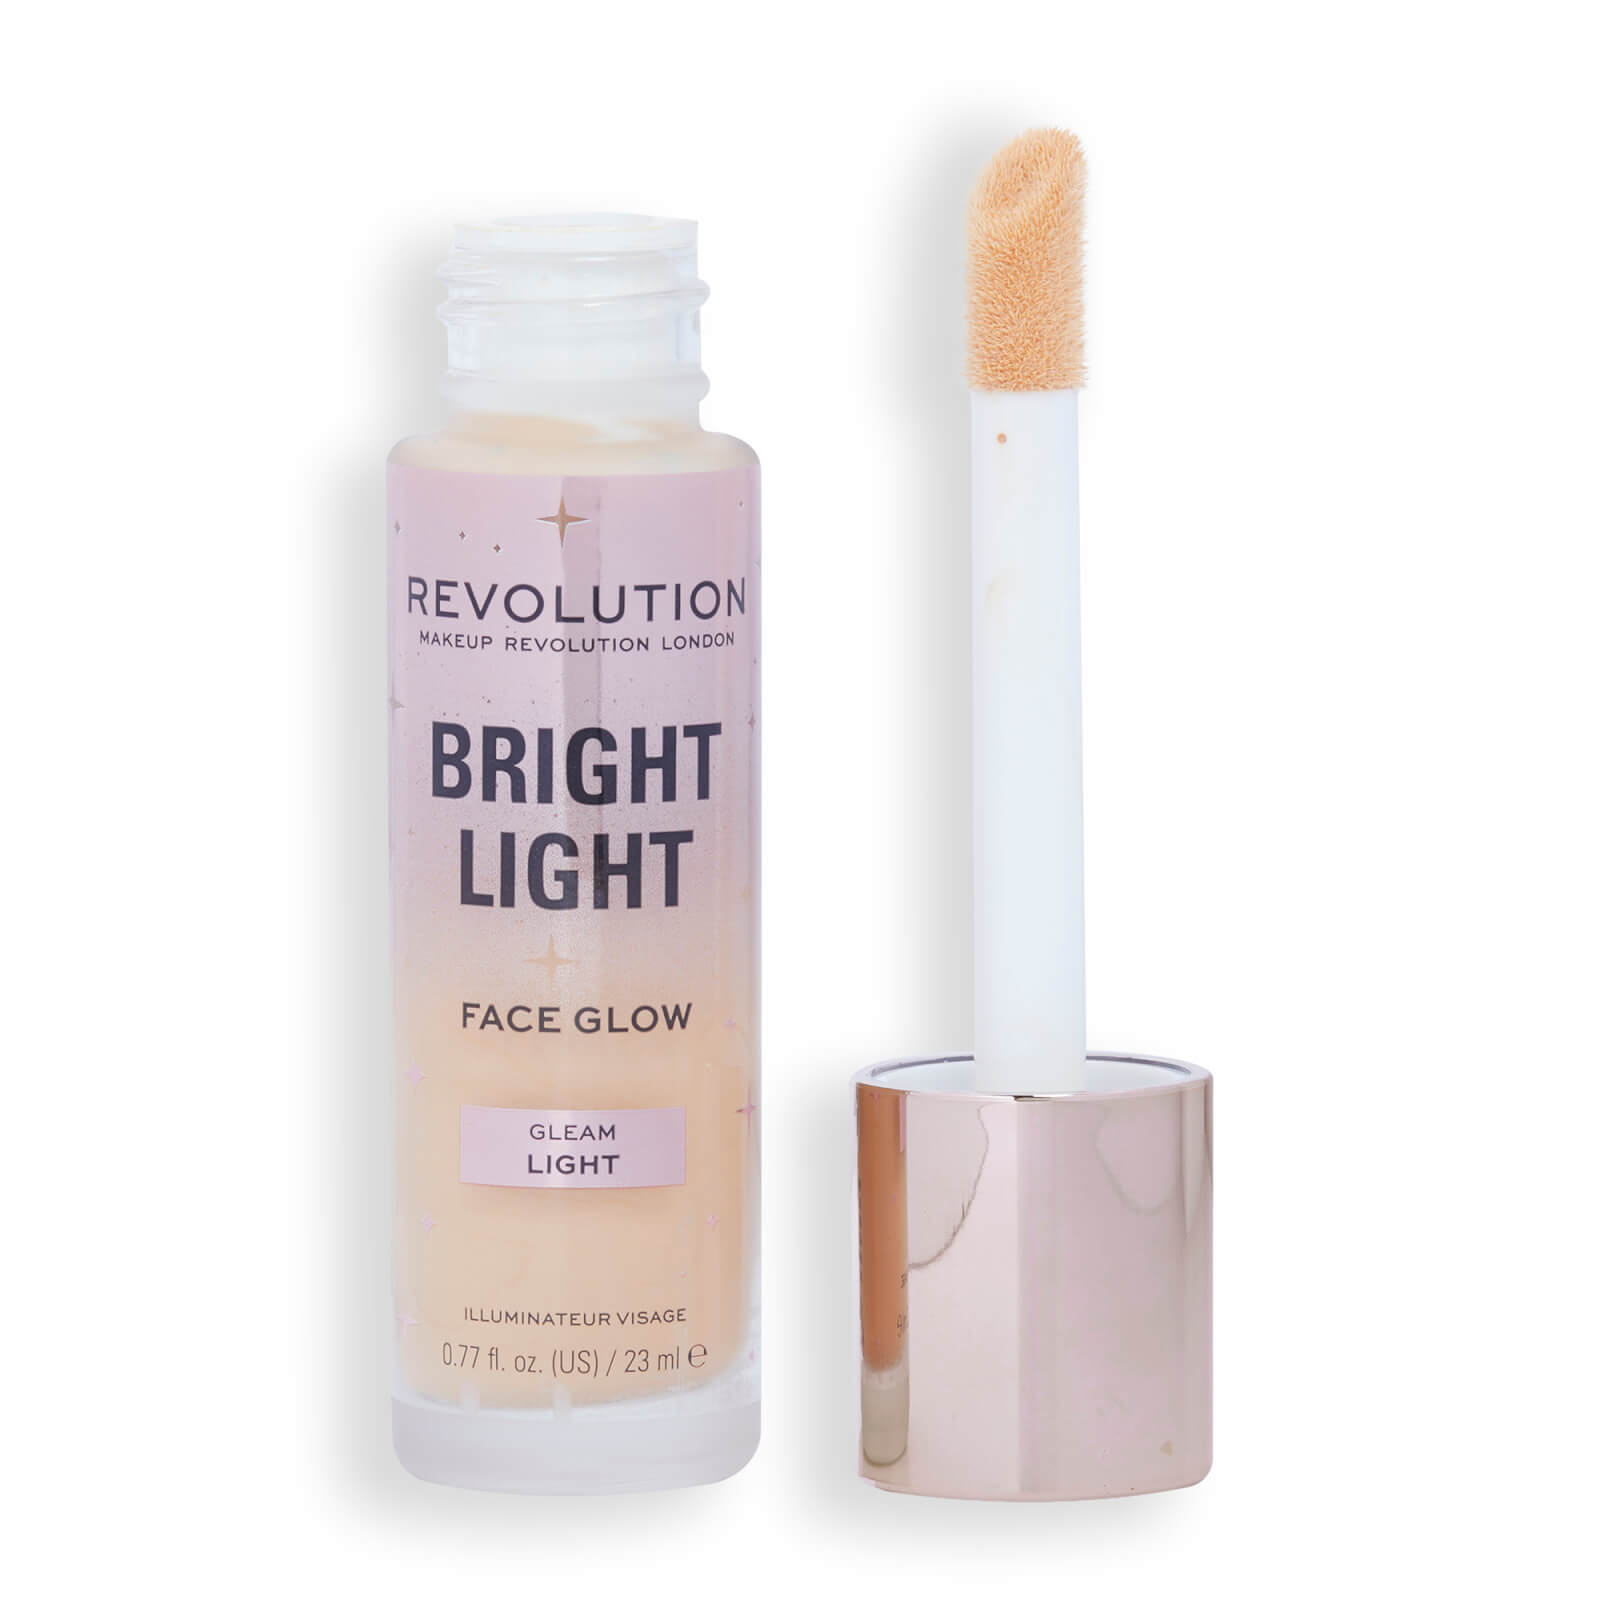 Revolution Bright Light Face Glow 23ml (Various Shades) - Gleam Light